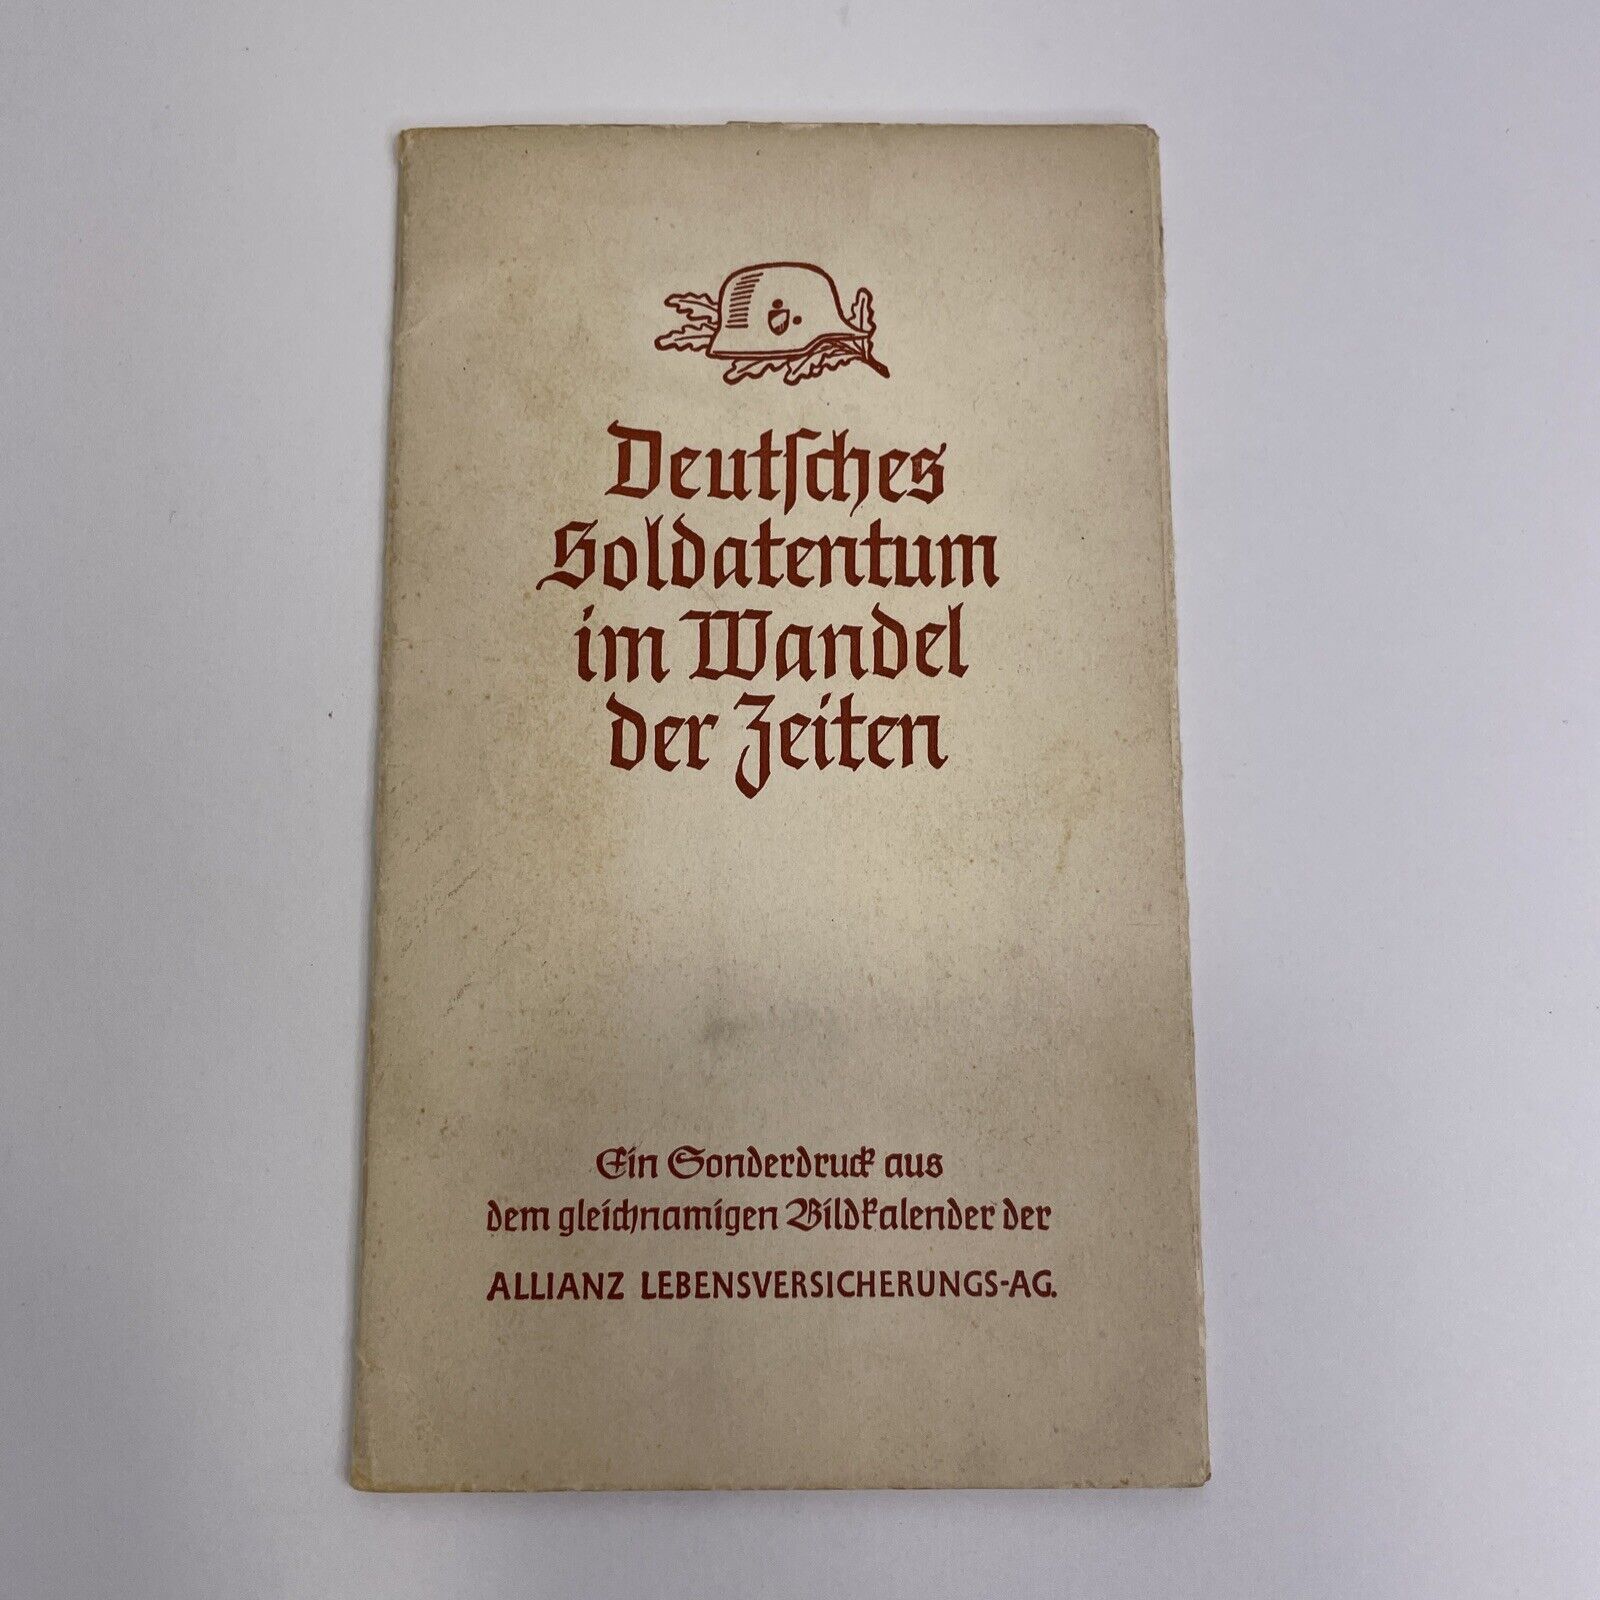 Vintage 1941 German Soldier Pocket Calendar (Incomplete) Deutsches Soldatentum